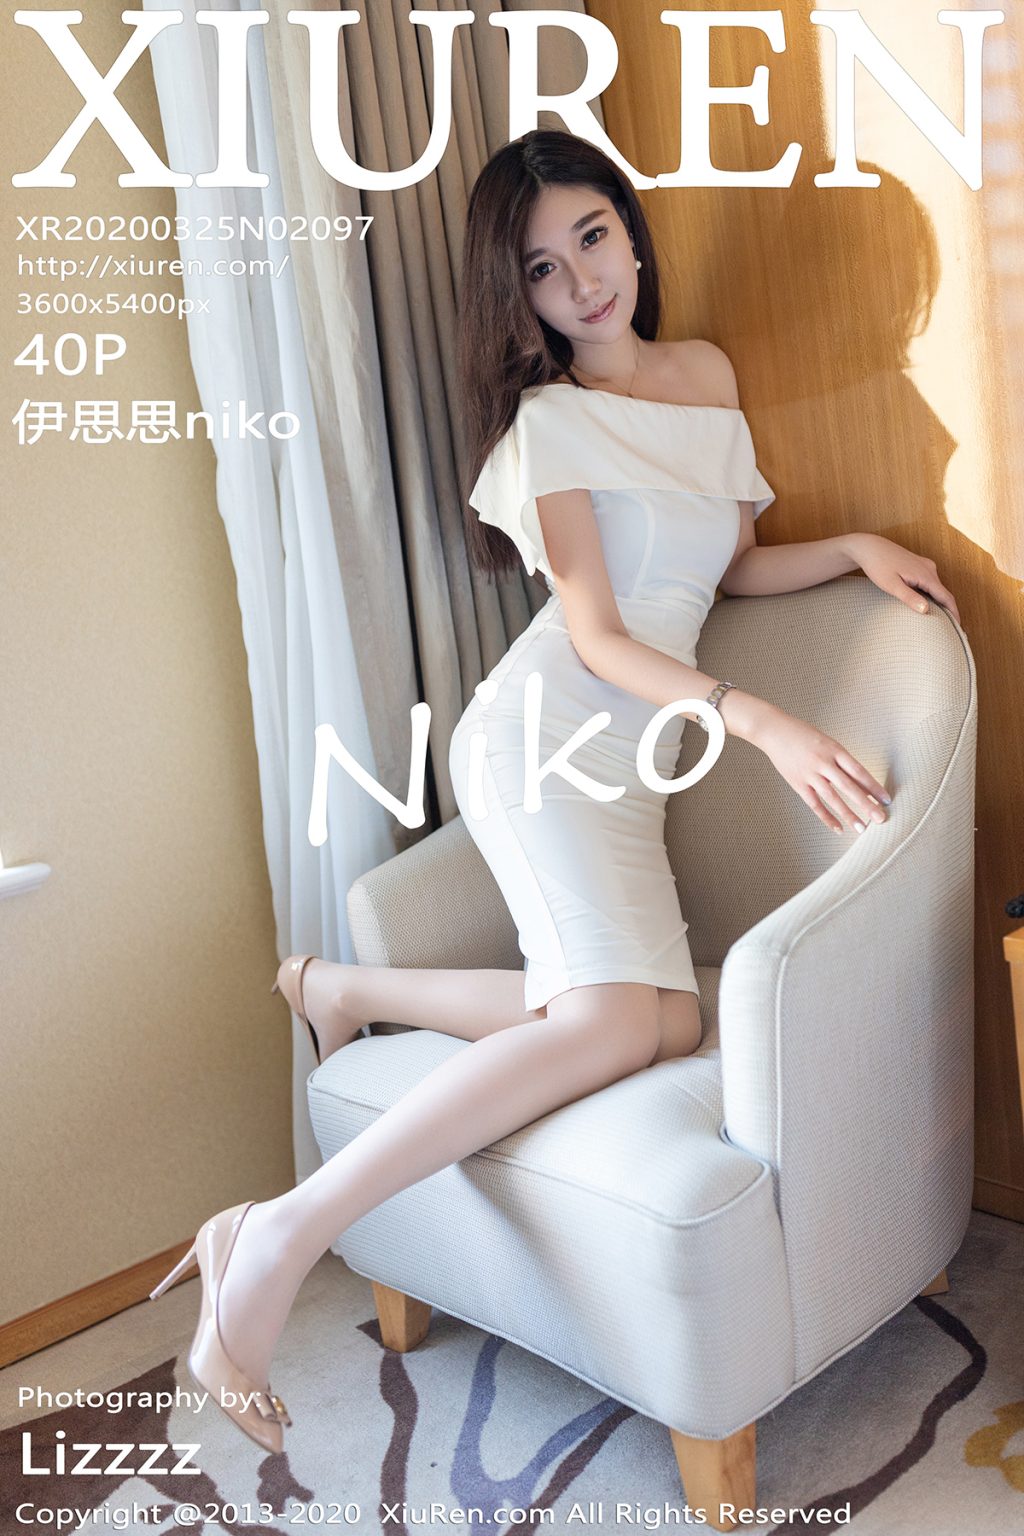 Watch sexy XIUREN No.2097: 伊思思niko photos